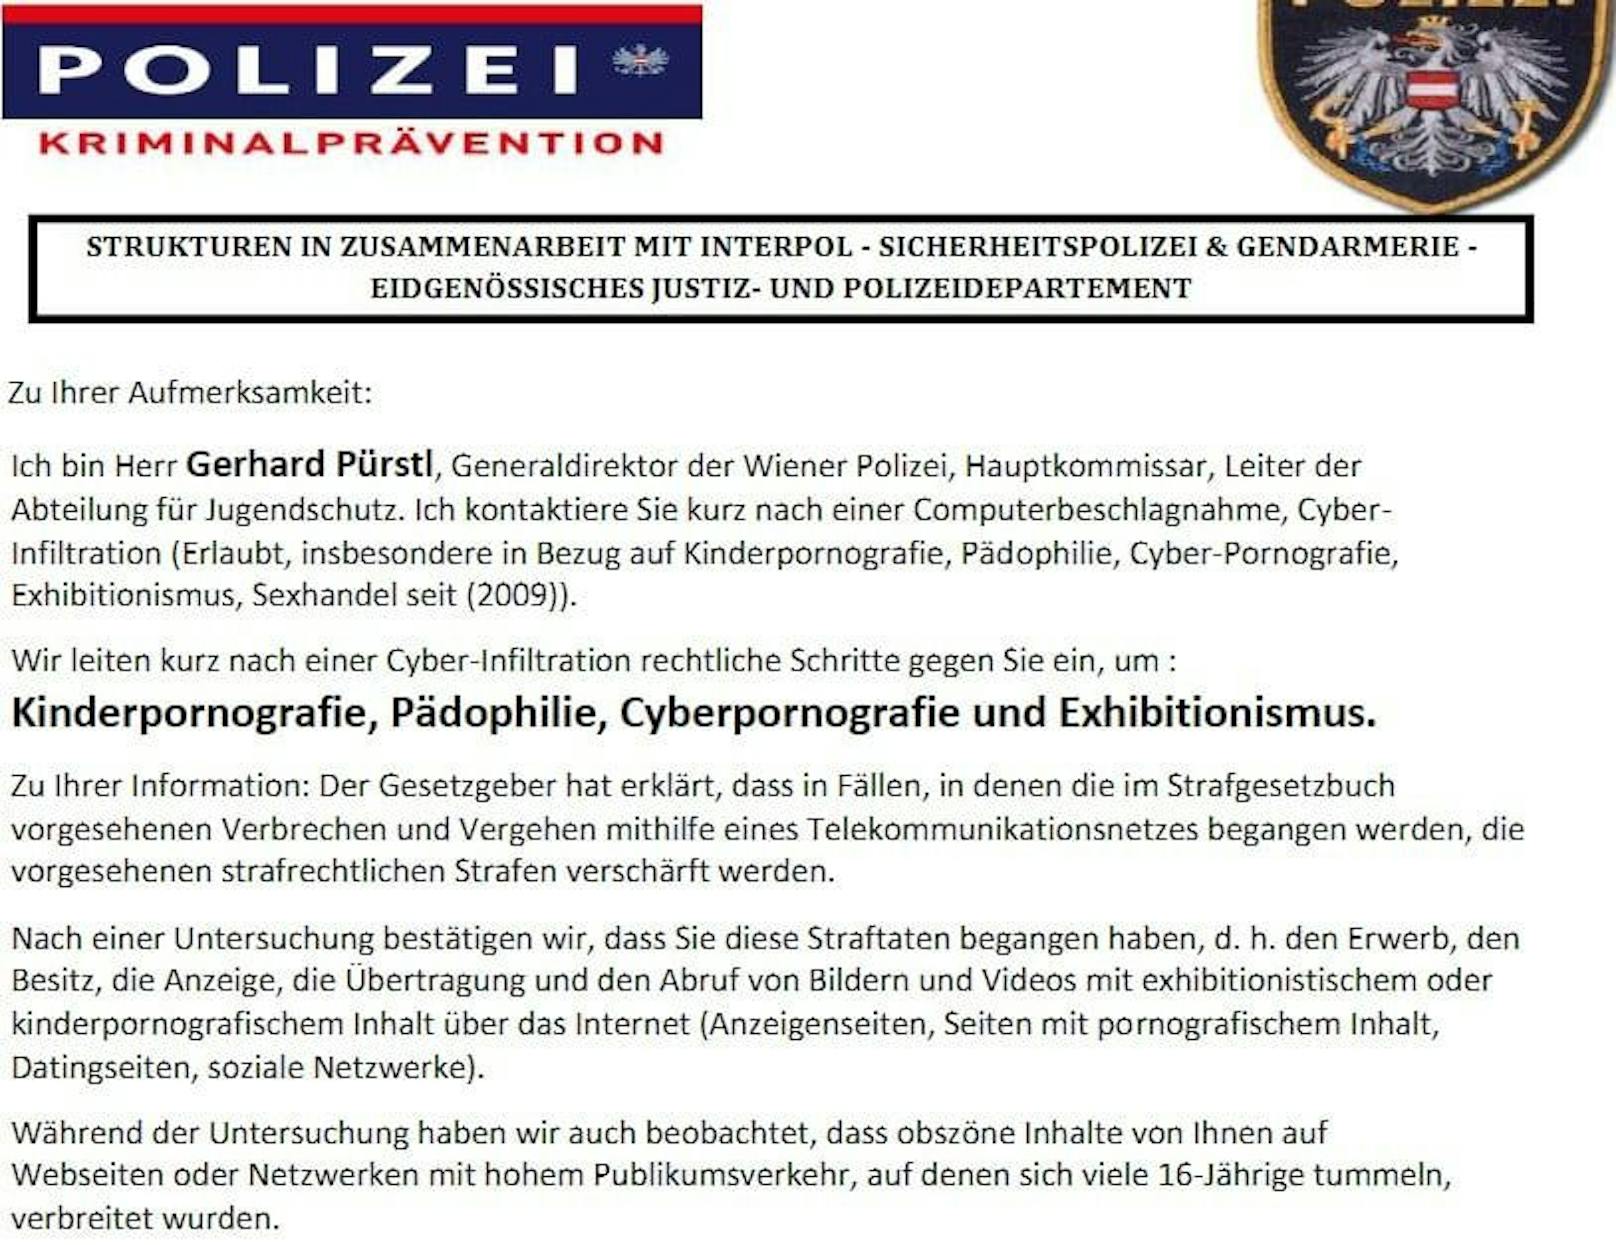 Polizei warnt jetzt alle Bürger vor "Interpol"-Mail